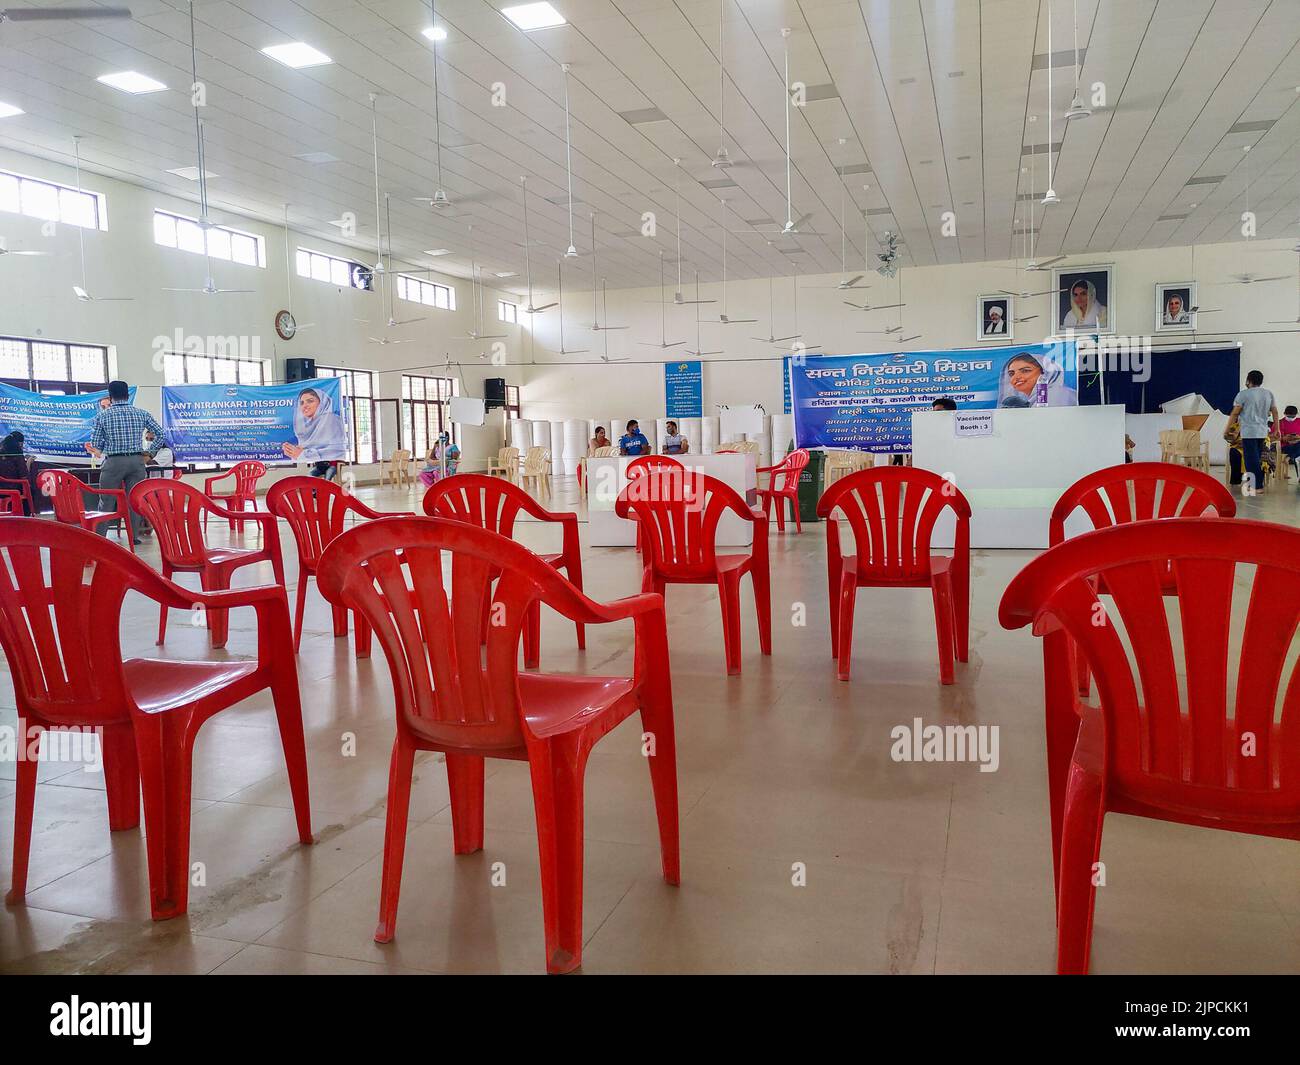 Juni 24. 2021 Dehradun Indien. Die Impfkampagne gegen den Corona-Virus findet statt, wobei Stühle und Menschen die soziale Distanz aufrechterhalten. Stockfoto